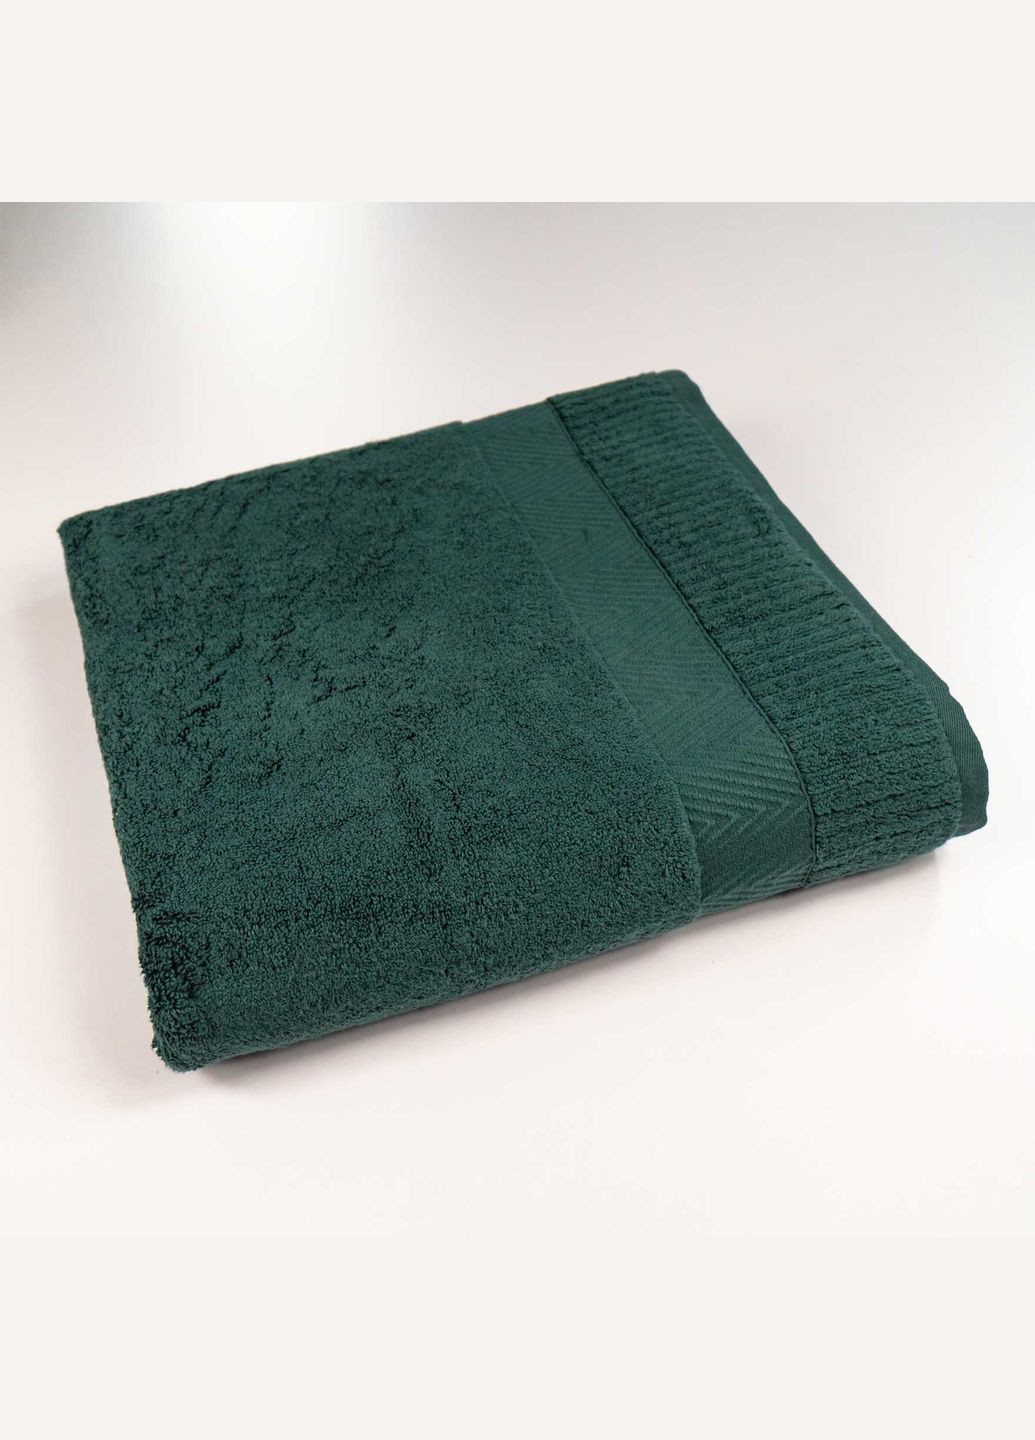 GM Textile большое банное махровое полотенце 100x150см премиум качества зеро твист бордюр 550г/м2 () зеленый производство -